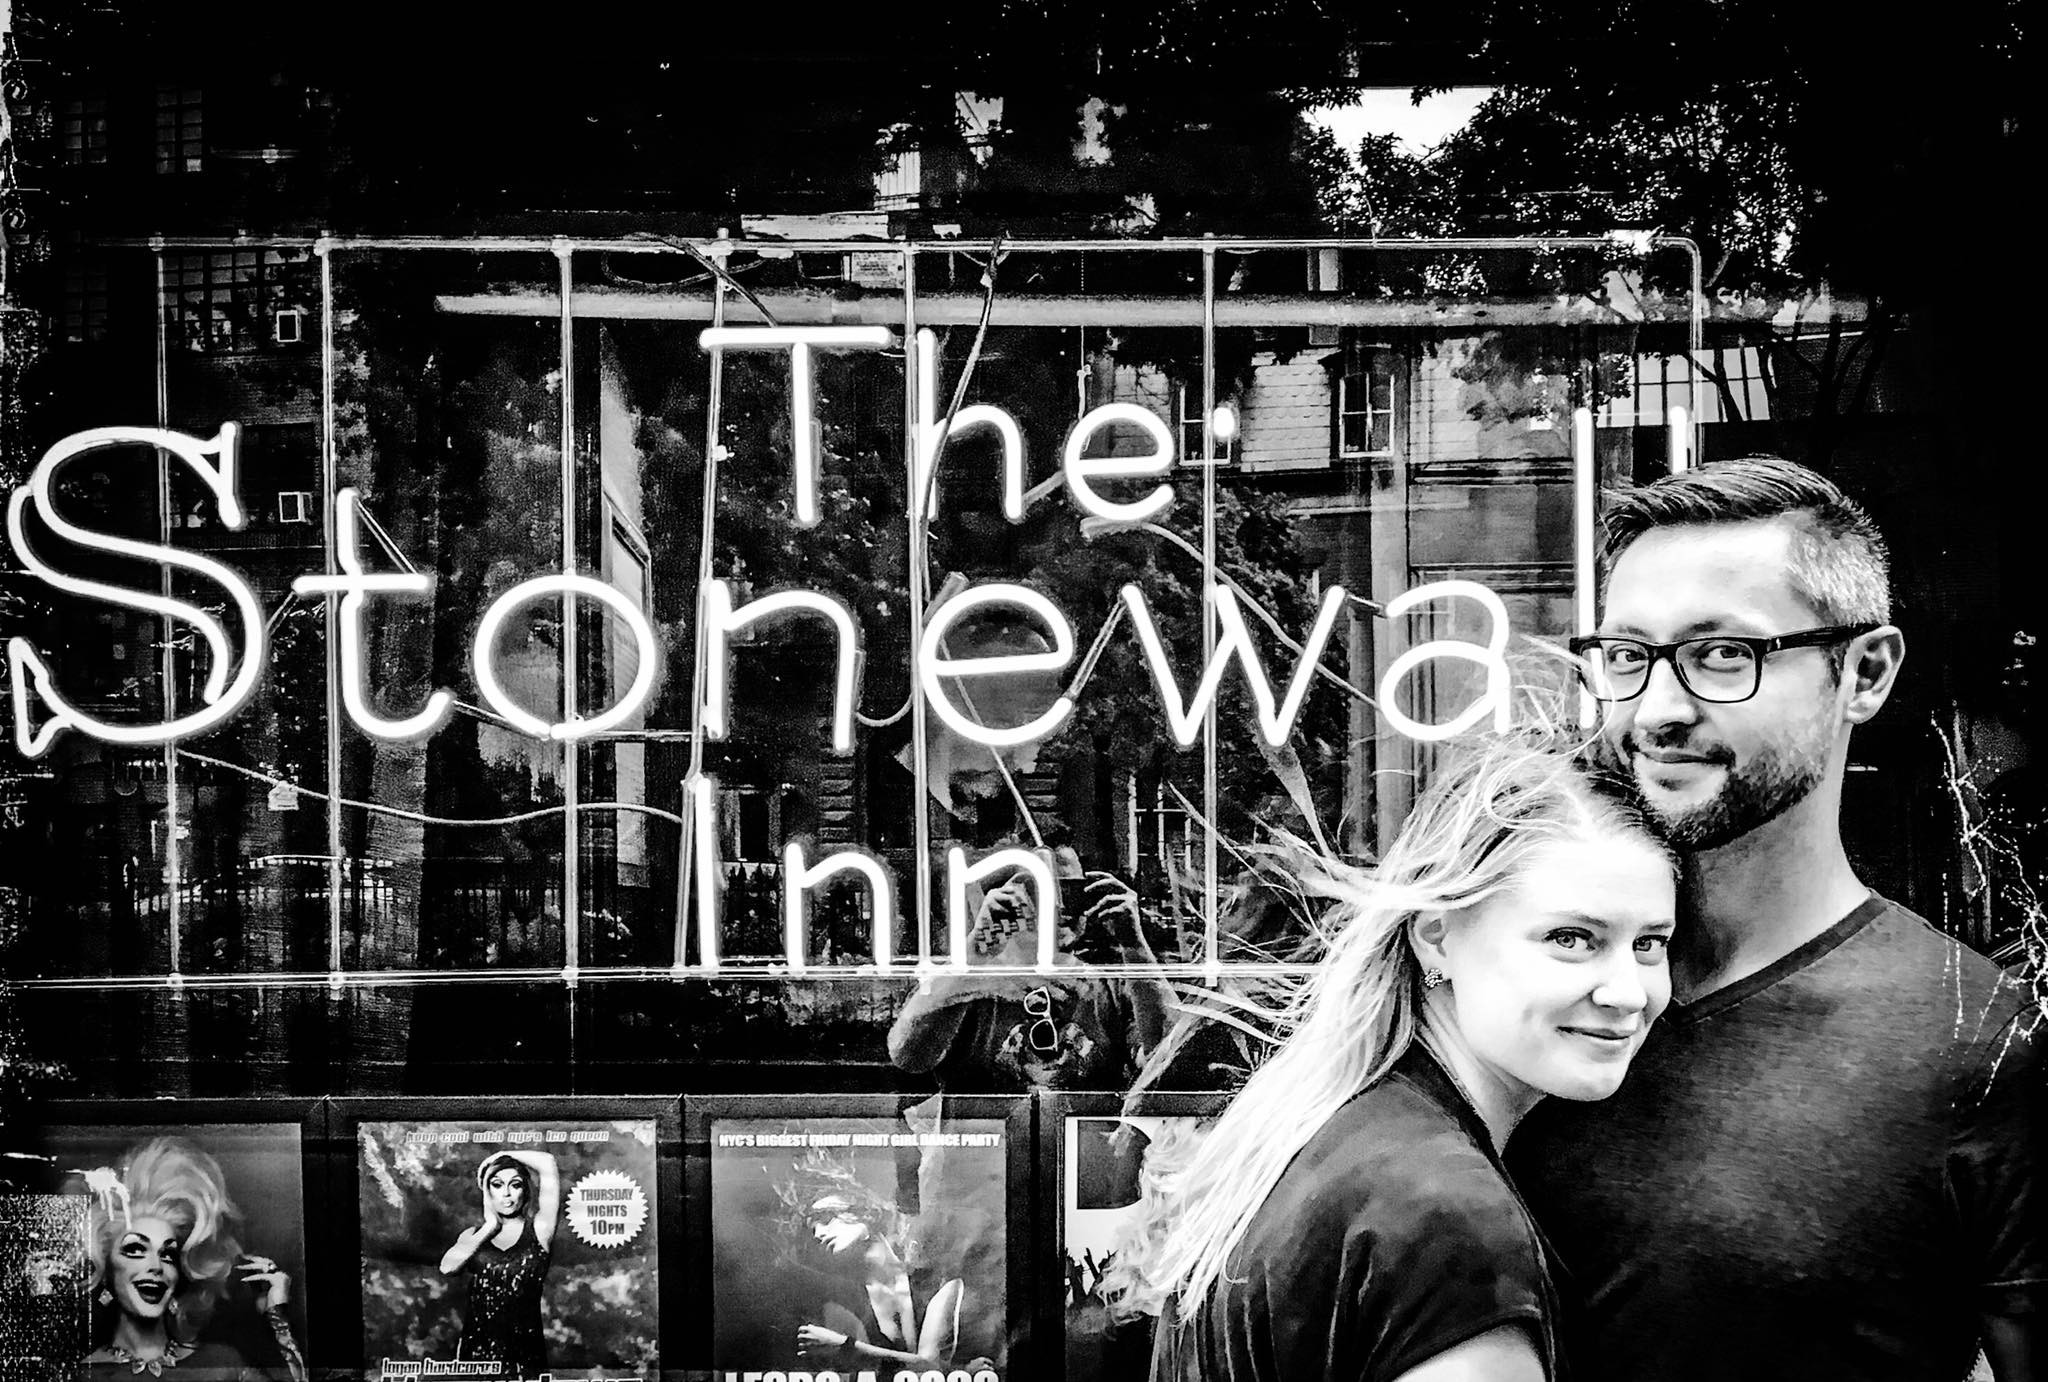 Abby and John at Stonewall.